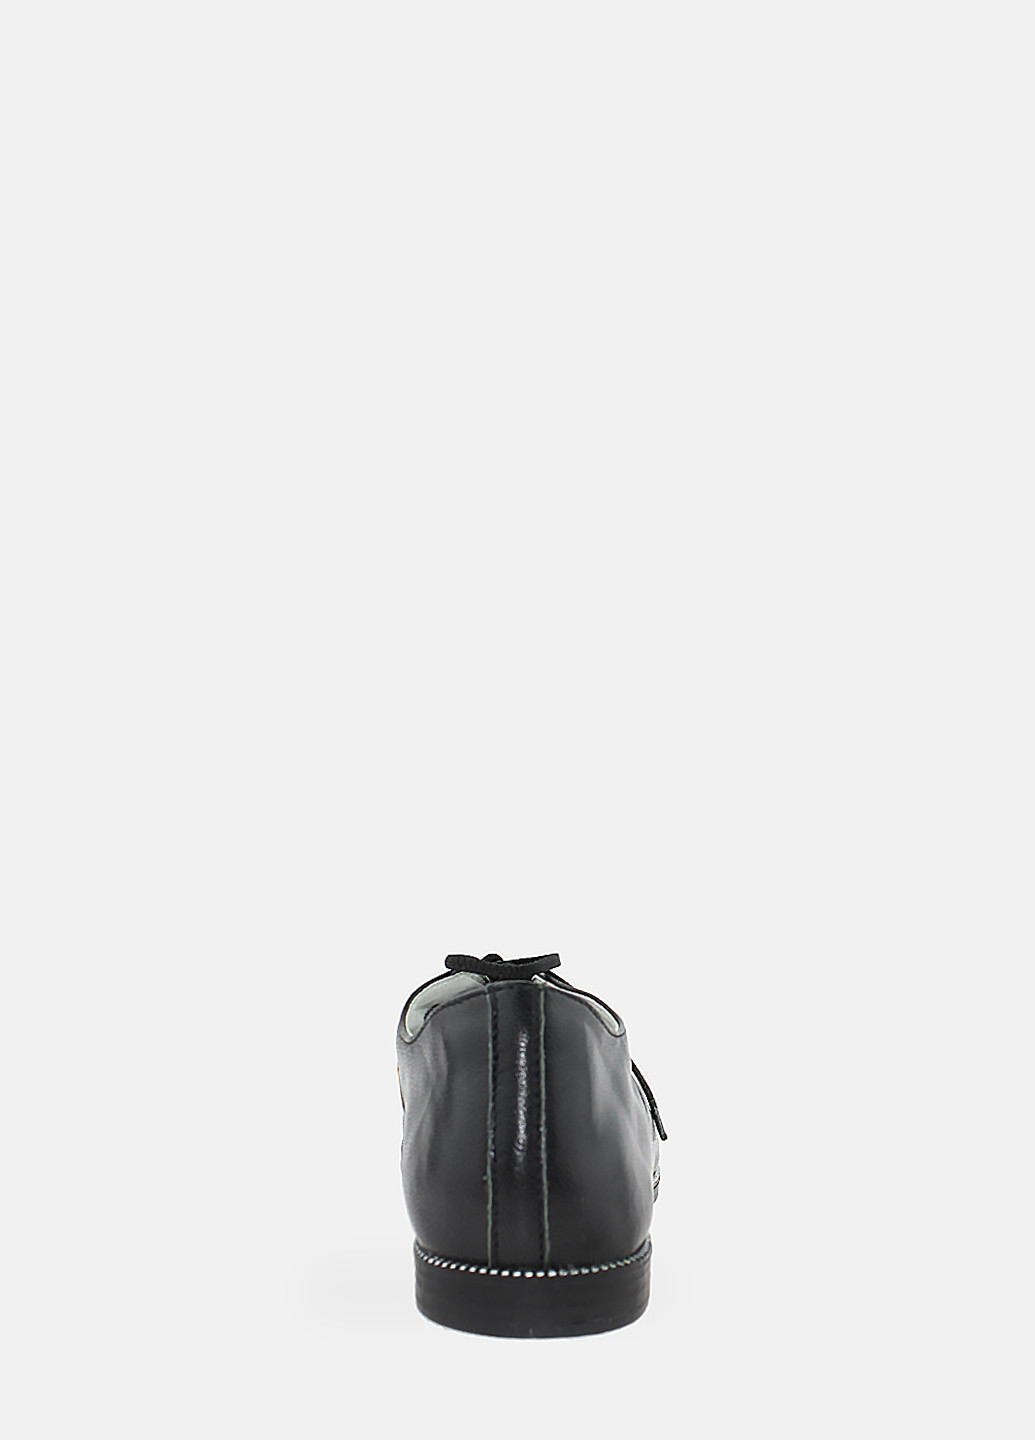 Черные туфли r4411 черный PDP